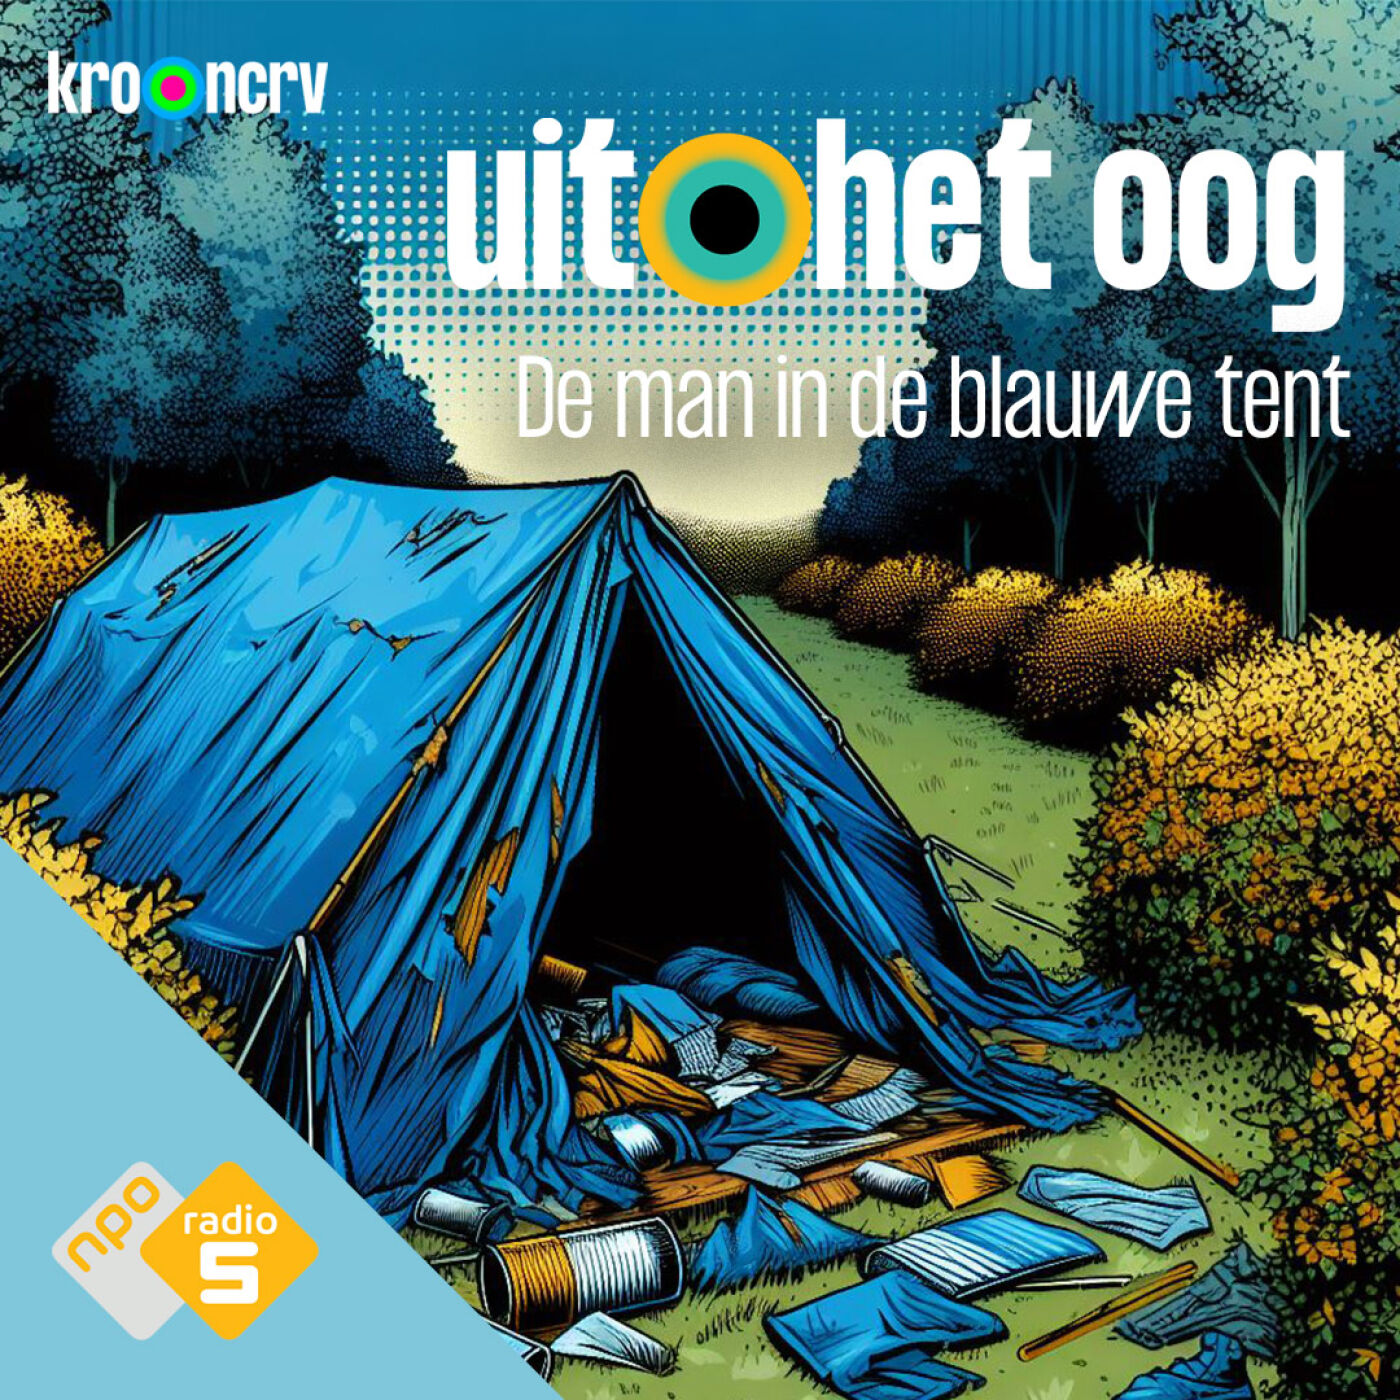 #5 - De man in de blauwe tent. (S06)